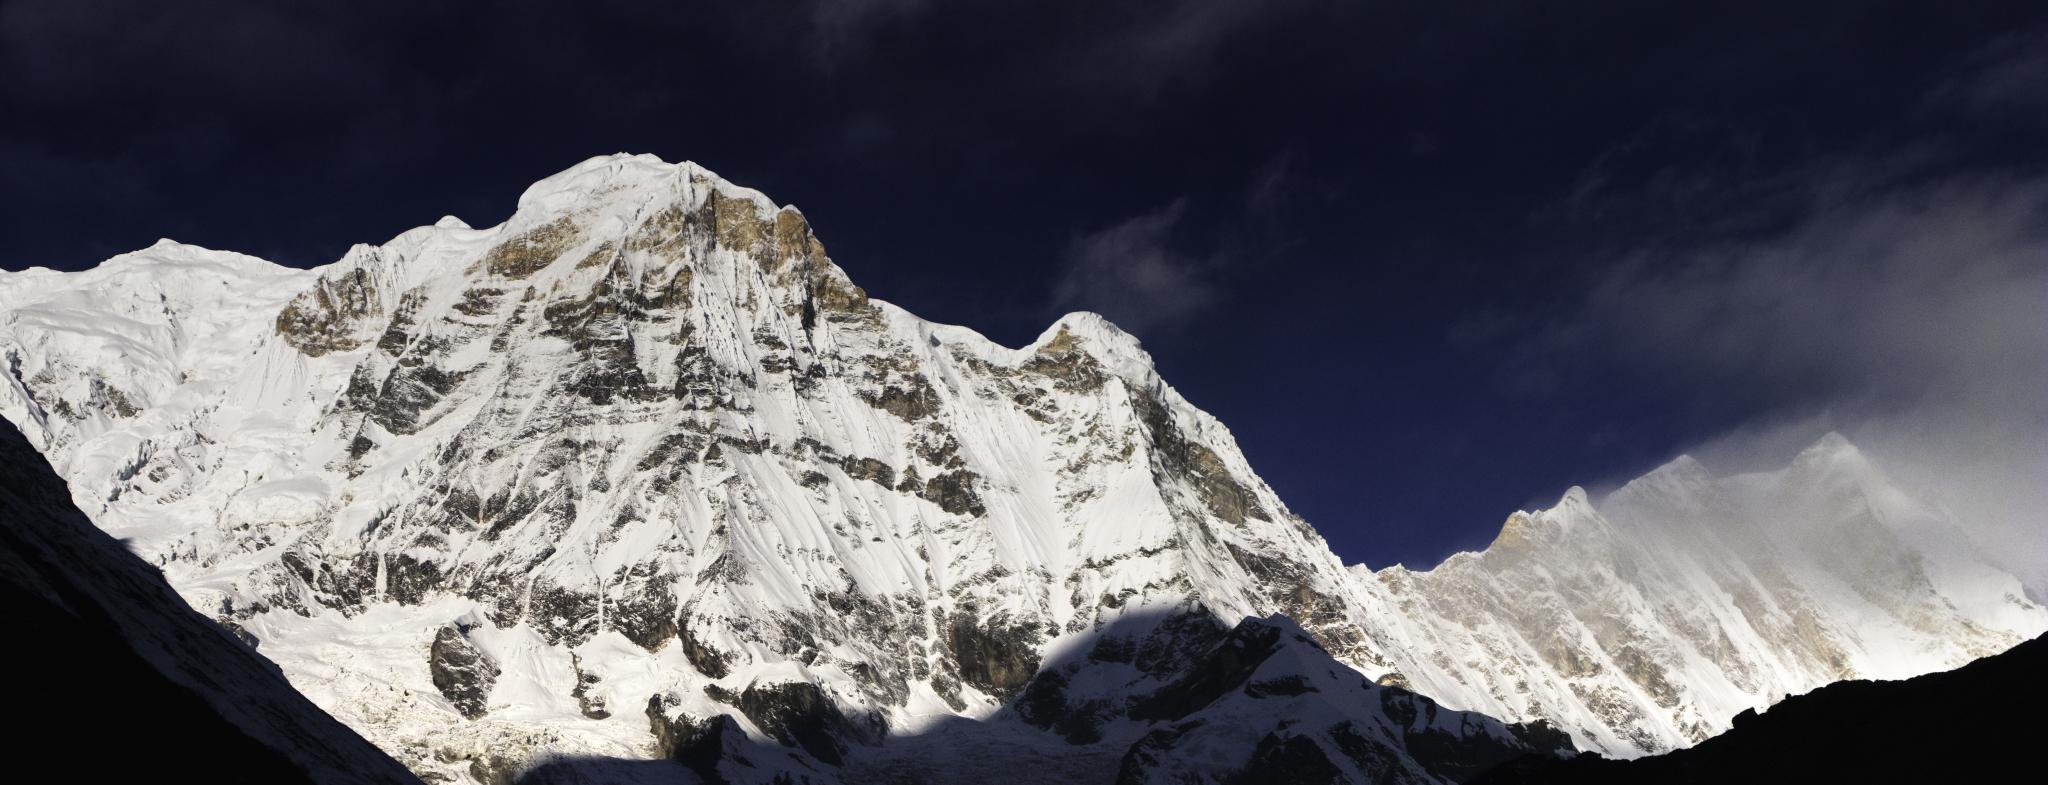 Himalyan Mountains in Nepal.